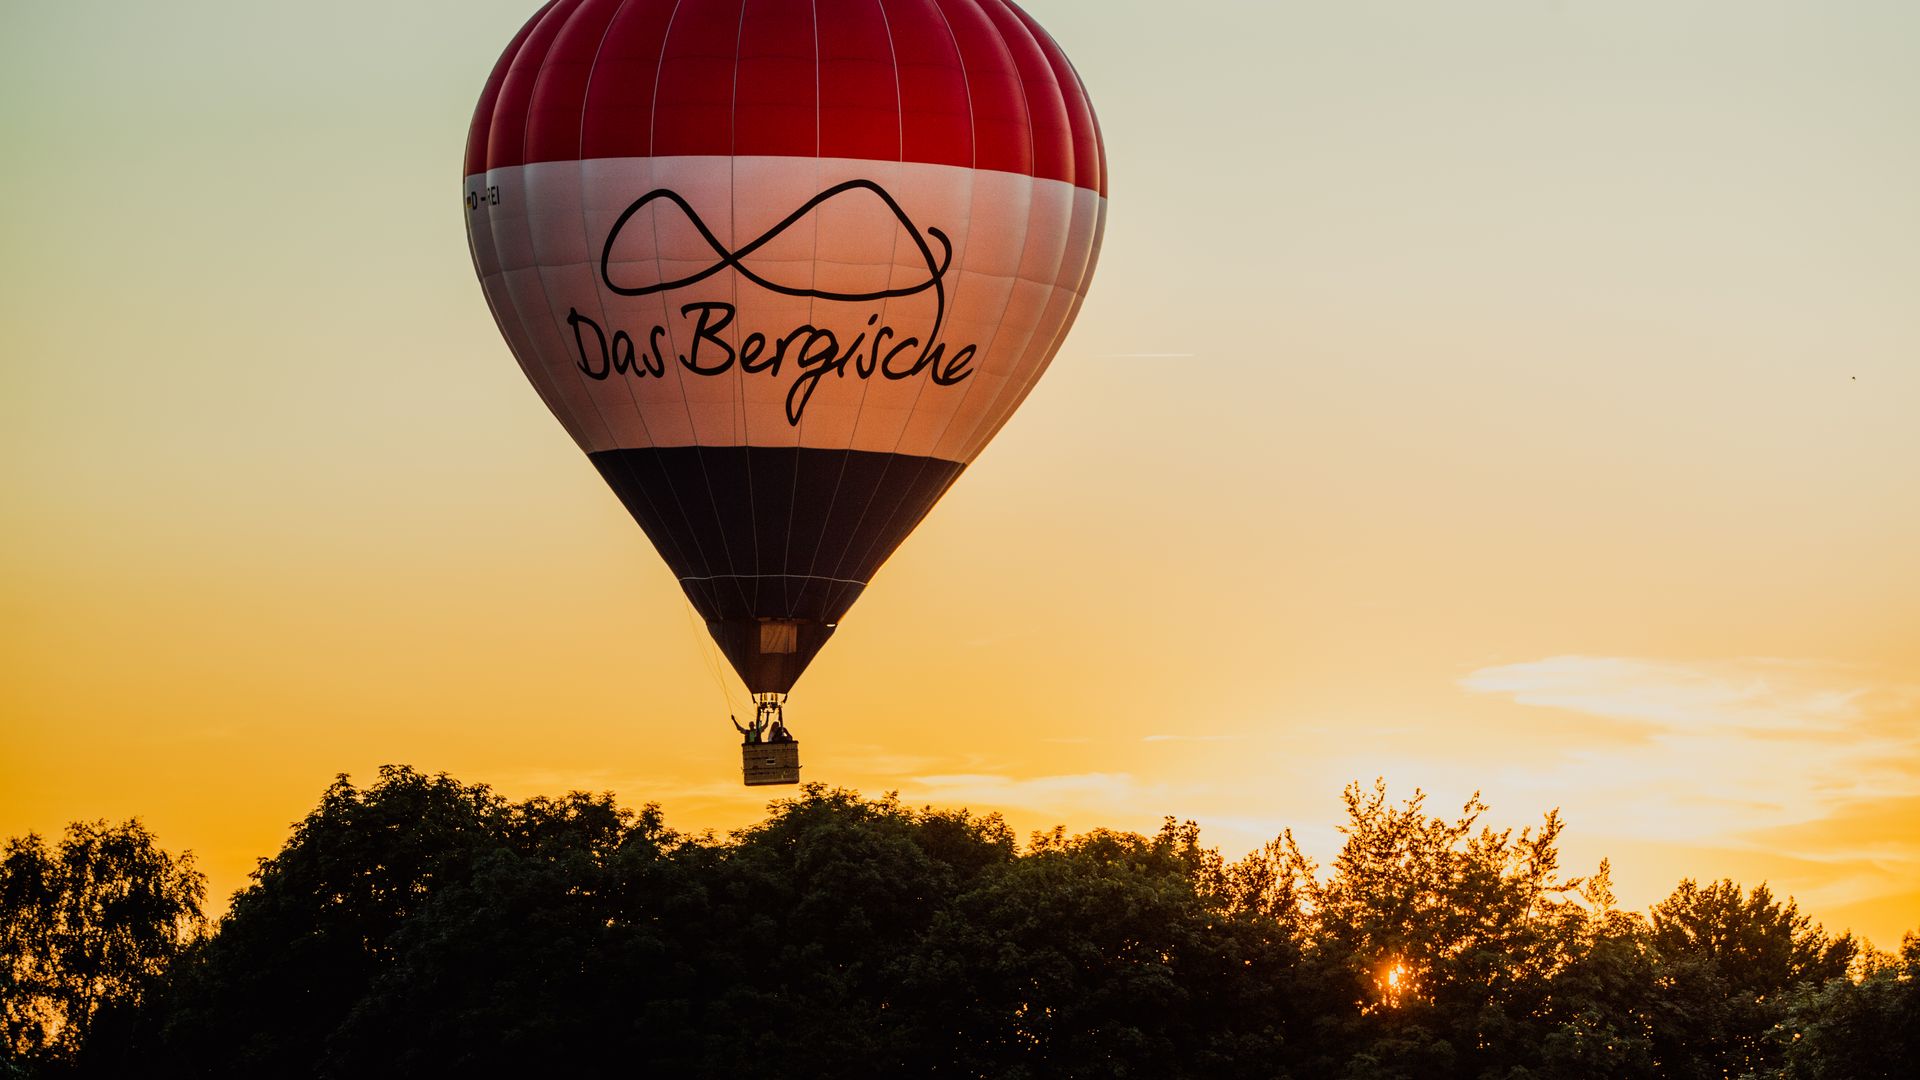 Ein Heißluftballon mit einem rot-weiß-blauen Ballon fährt über den Baumwipfeln im Sonnenuntergang.